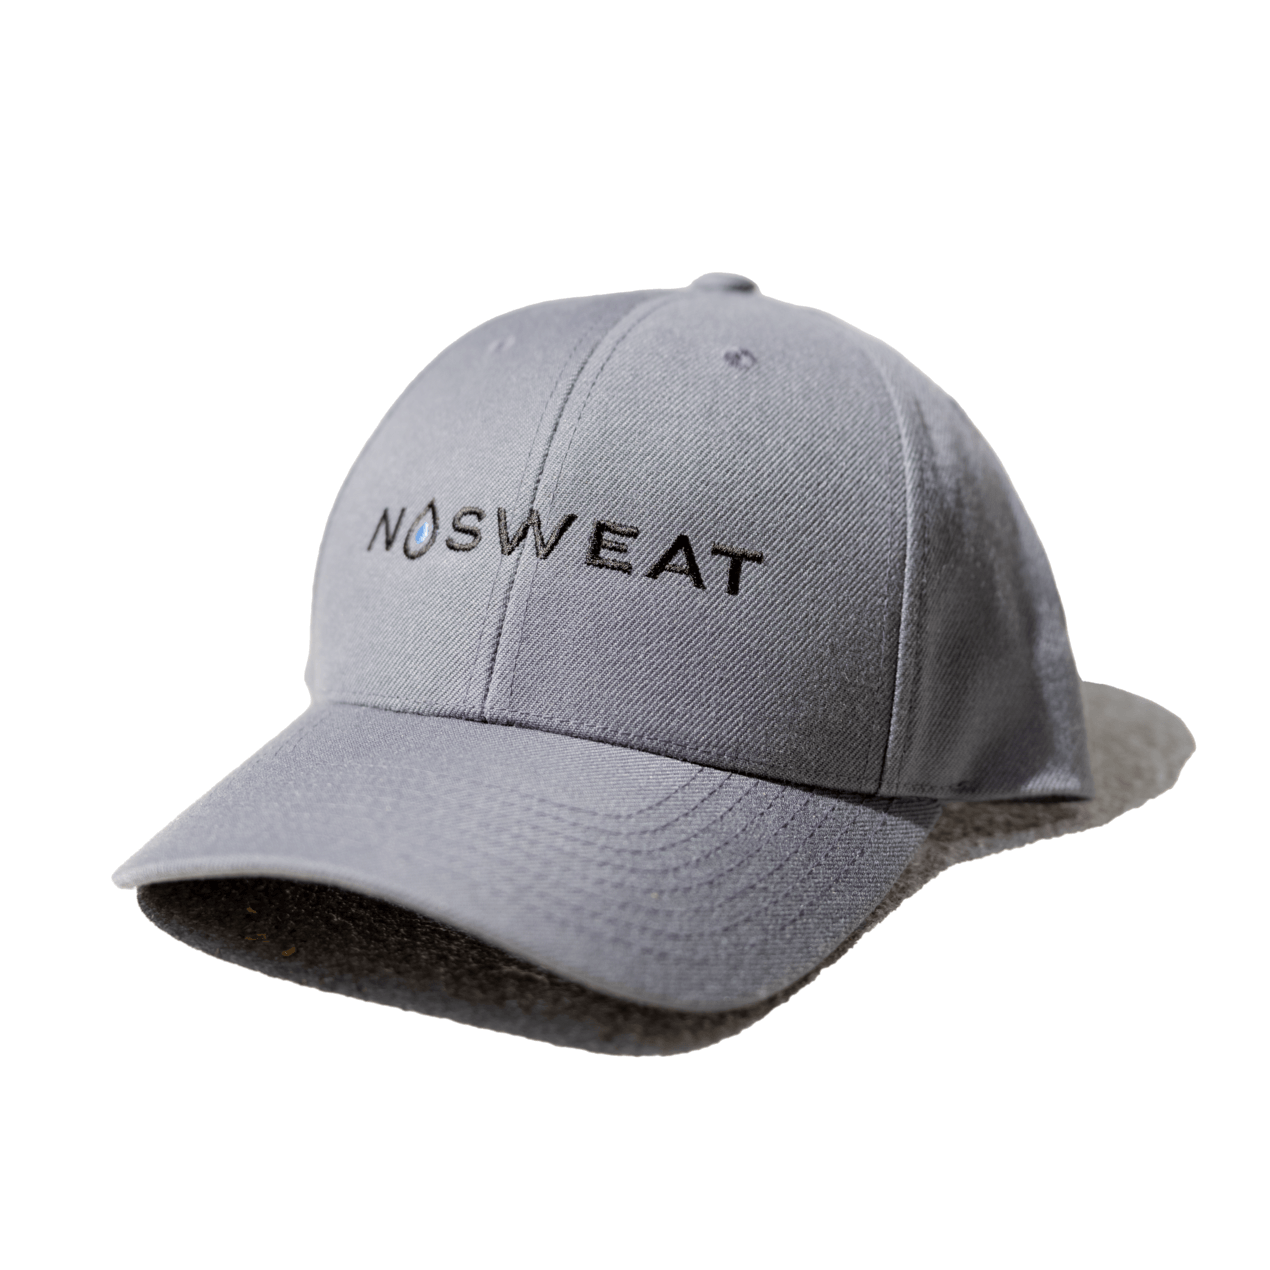 NoSweat Cap and Helmet Liners